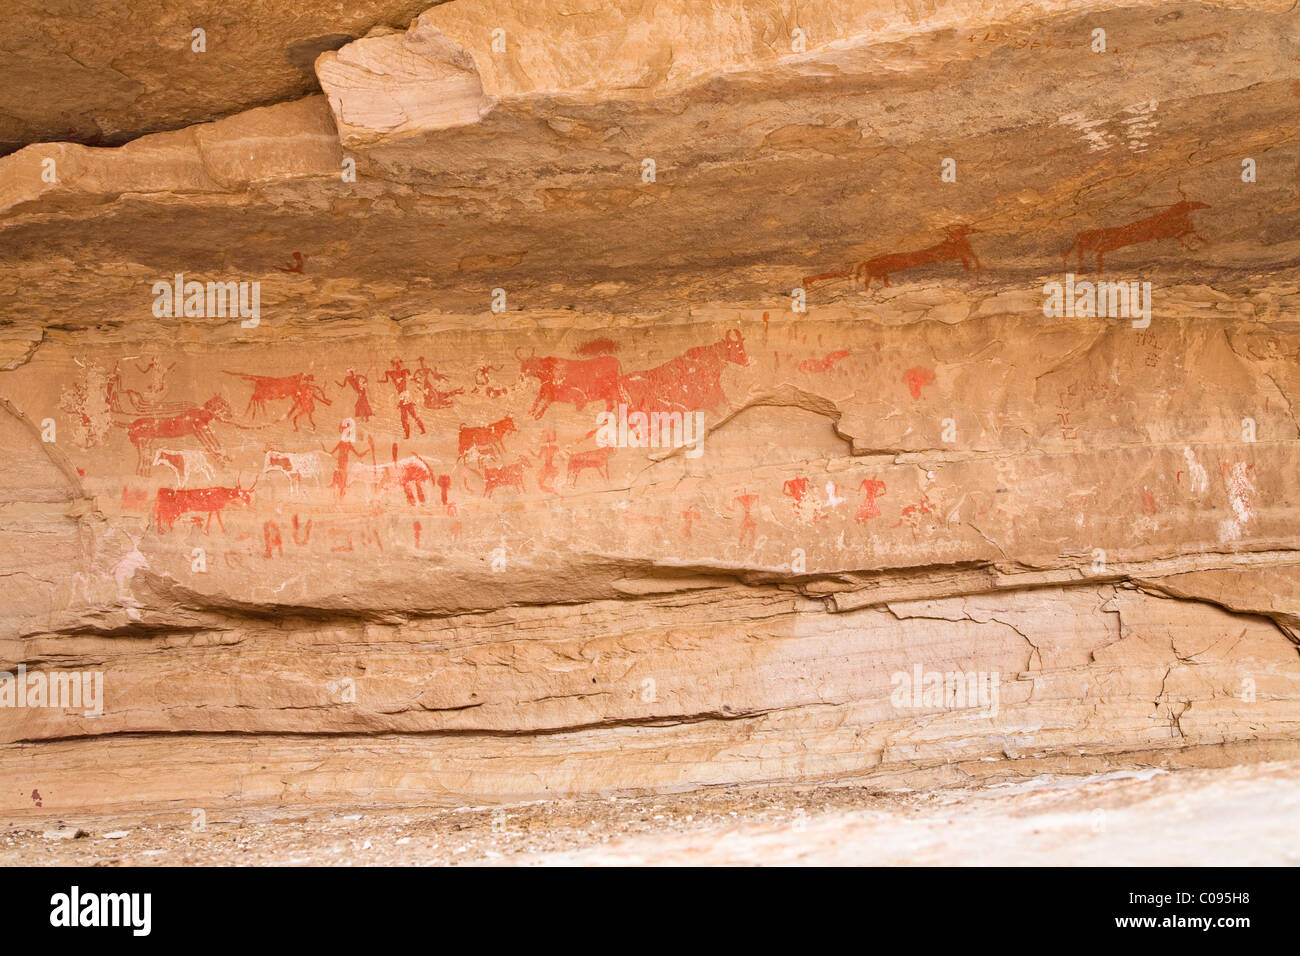 Roccia disegni preistorici in patners per la valle, Akakus montagne, deserto libico, Libia, Sahara, Africa Settentrionale, Africa Foto Stock